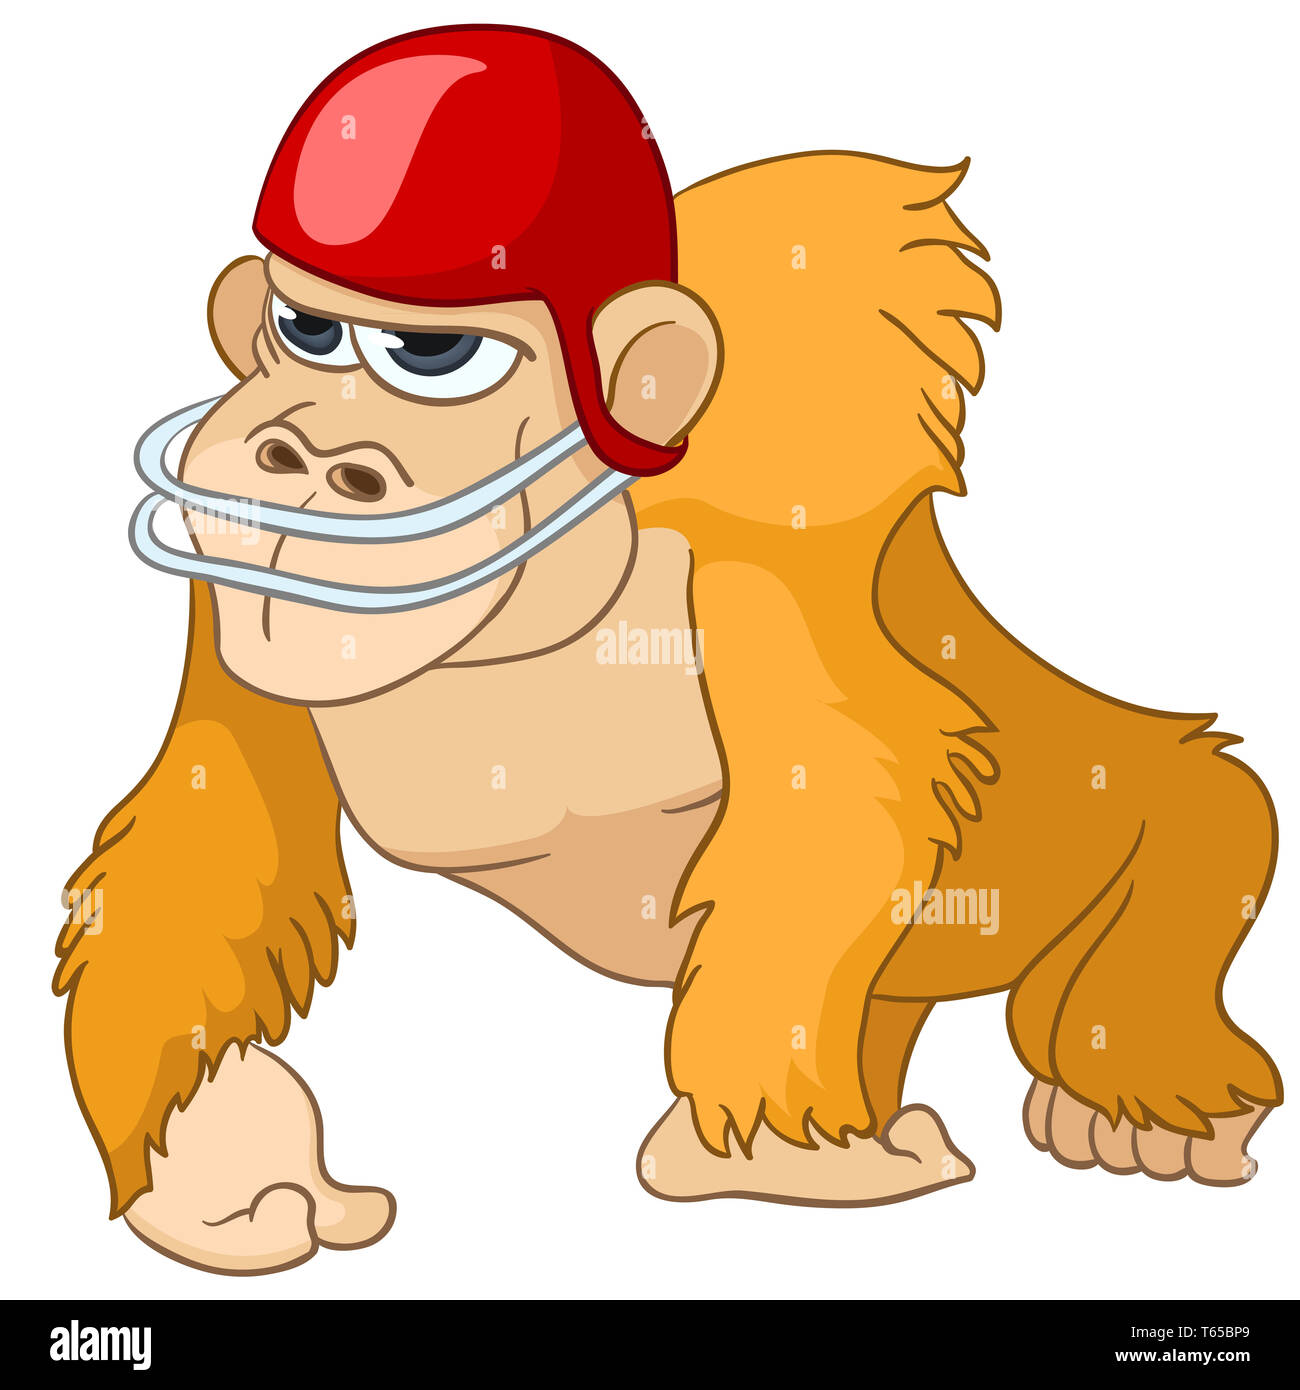 best monkey poker avatars